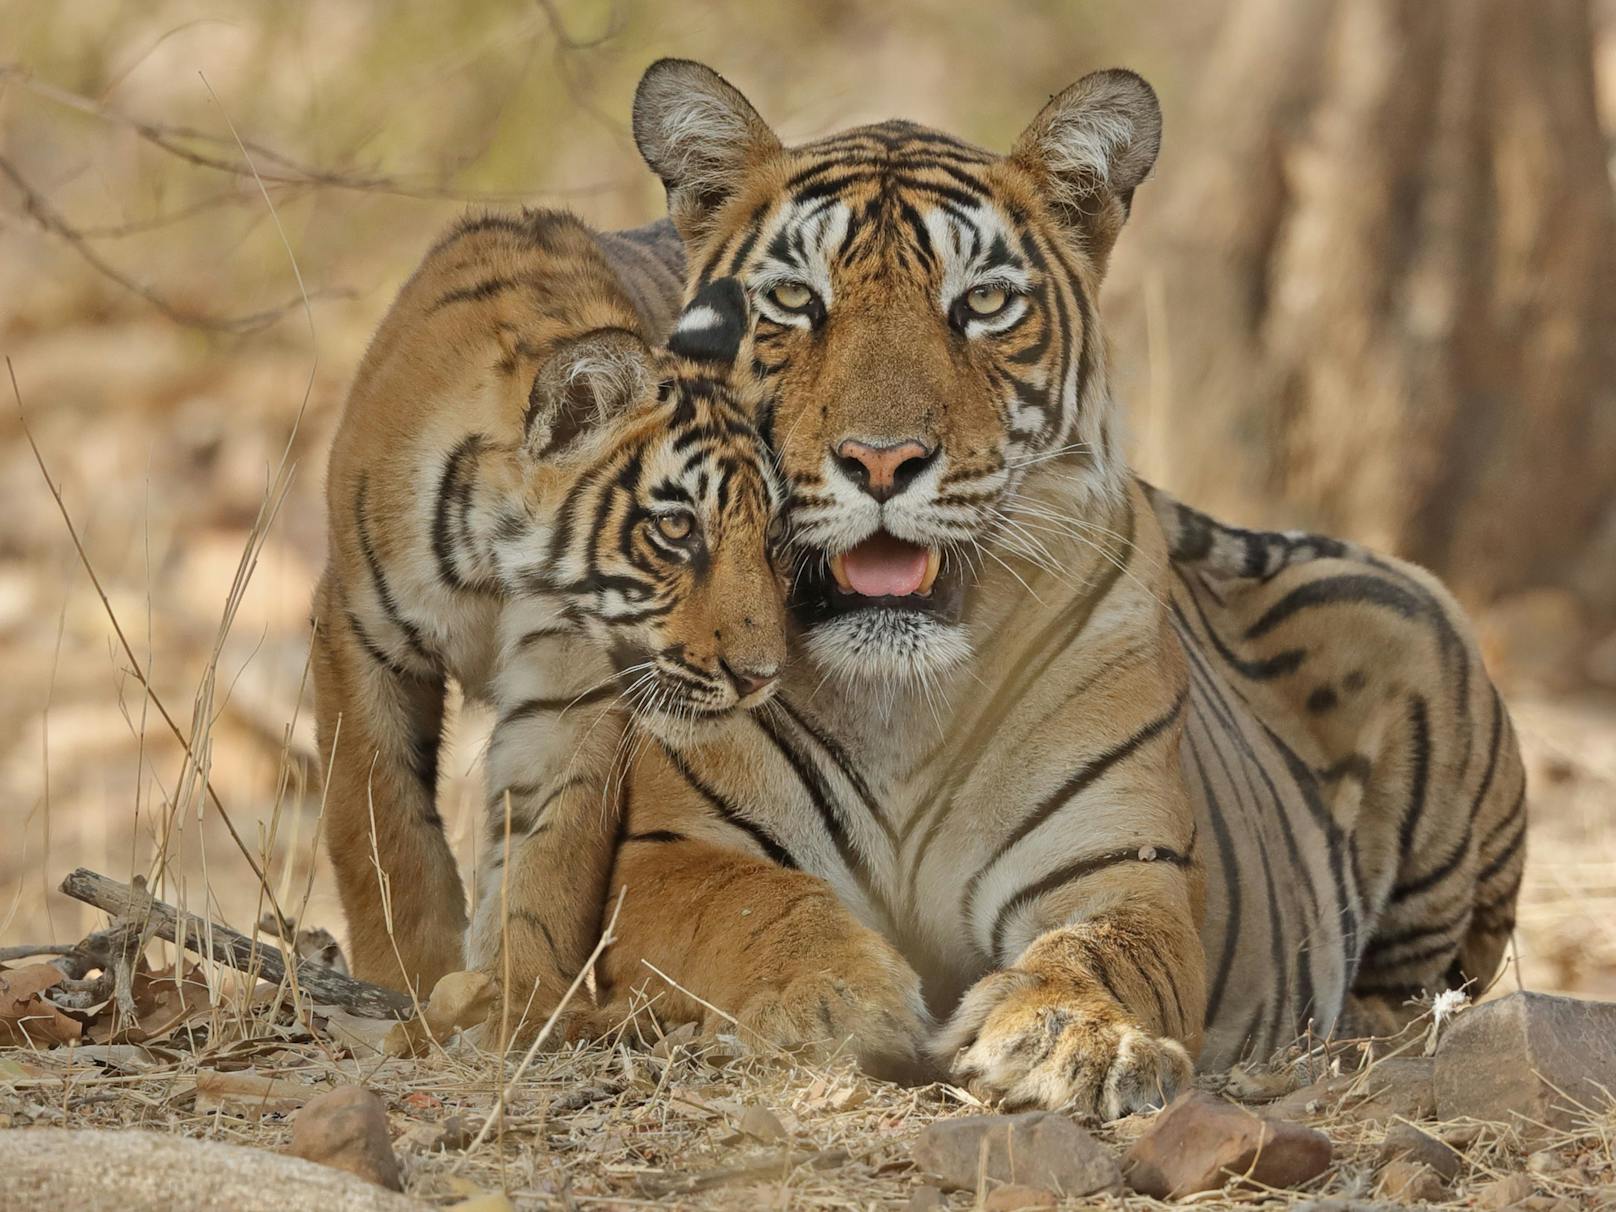 Die weltweiten Wirbeltierpopulationen nehmen rasant ab. Zu den wenigen Arten, bei denen dank intensiver Schutzmaßnahmen Zuwächse verzeichnet werden konnten, zählt der Tiger in Nepal.